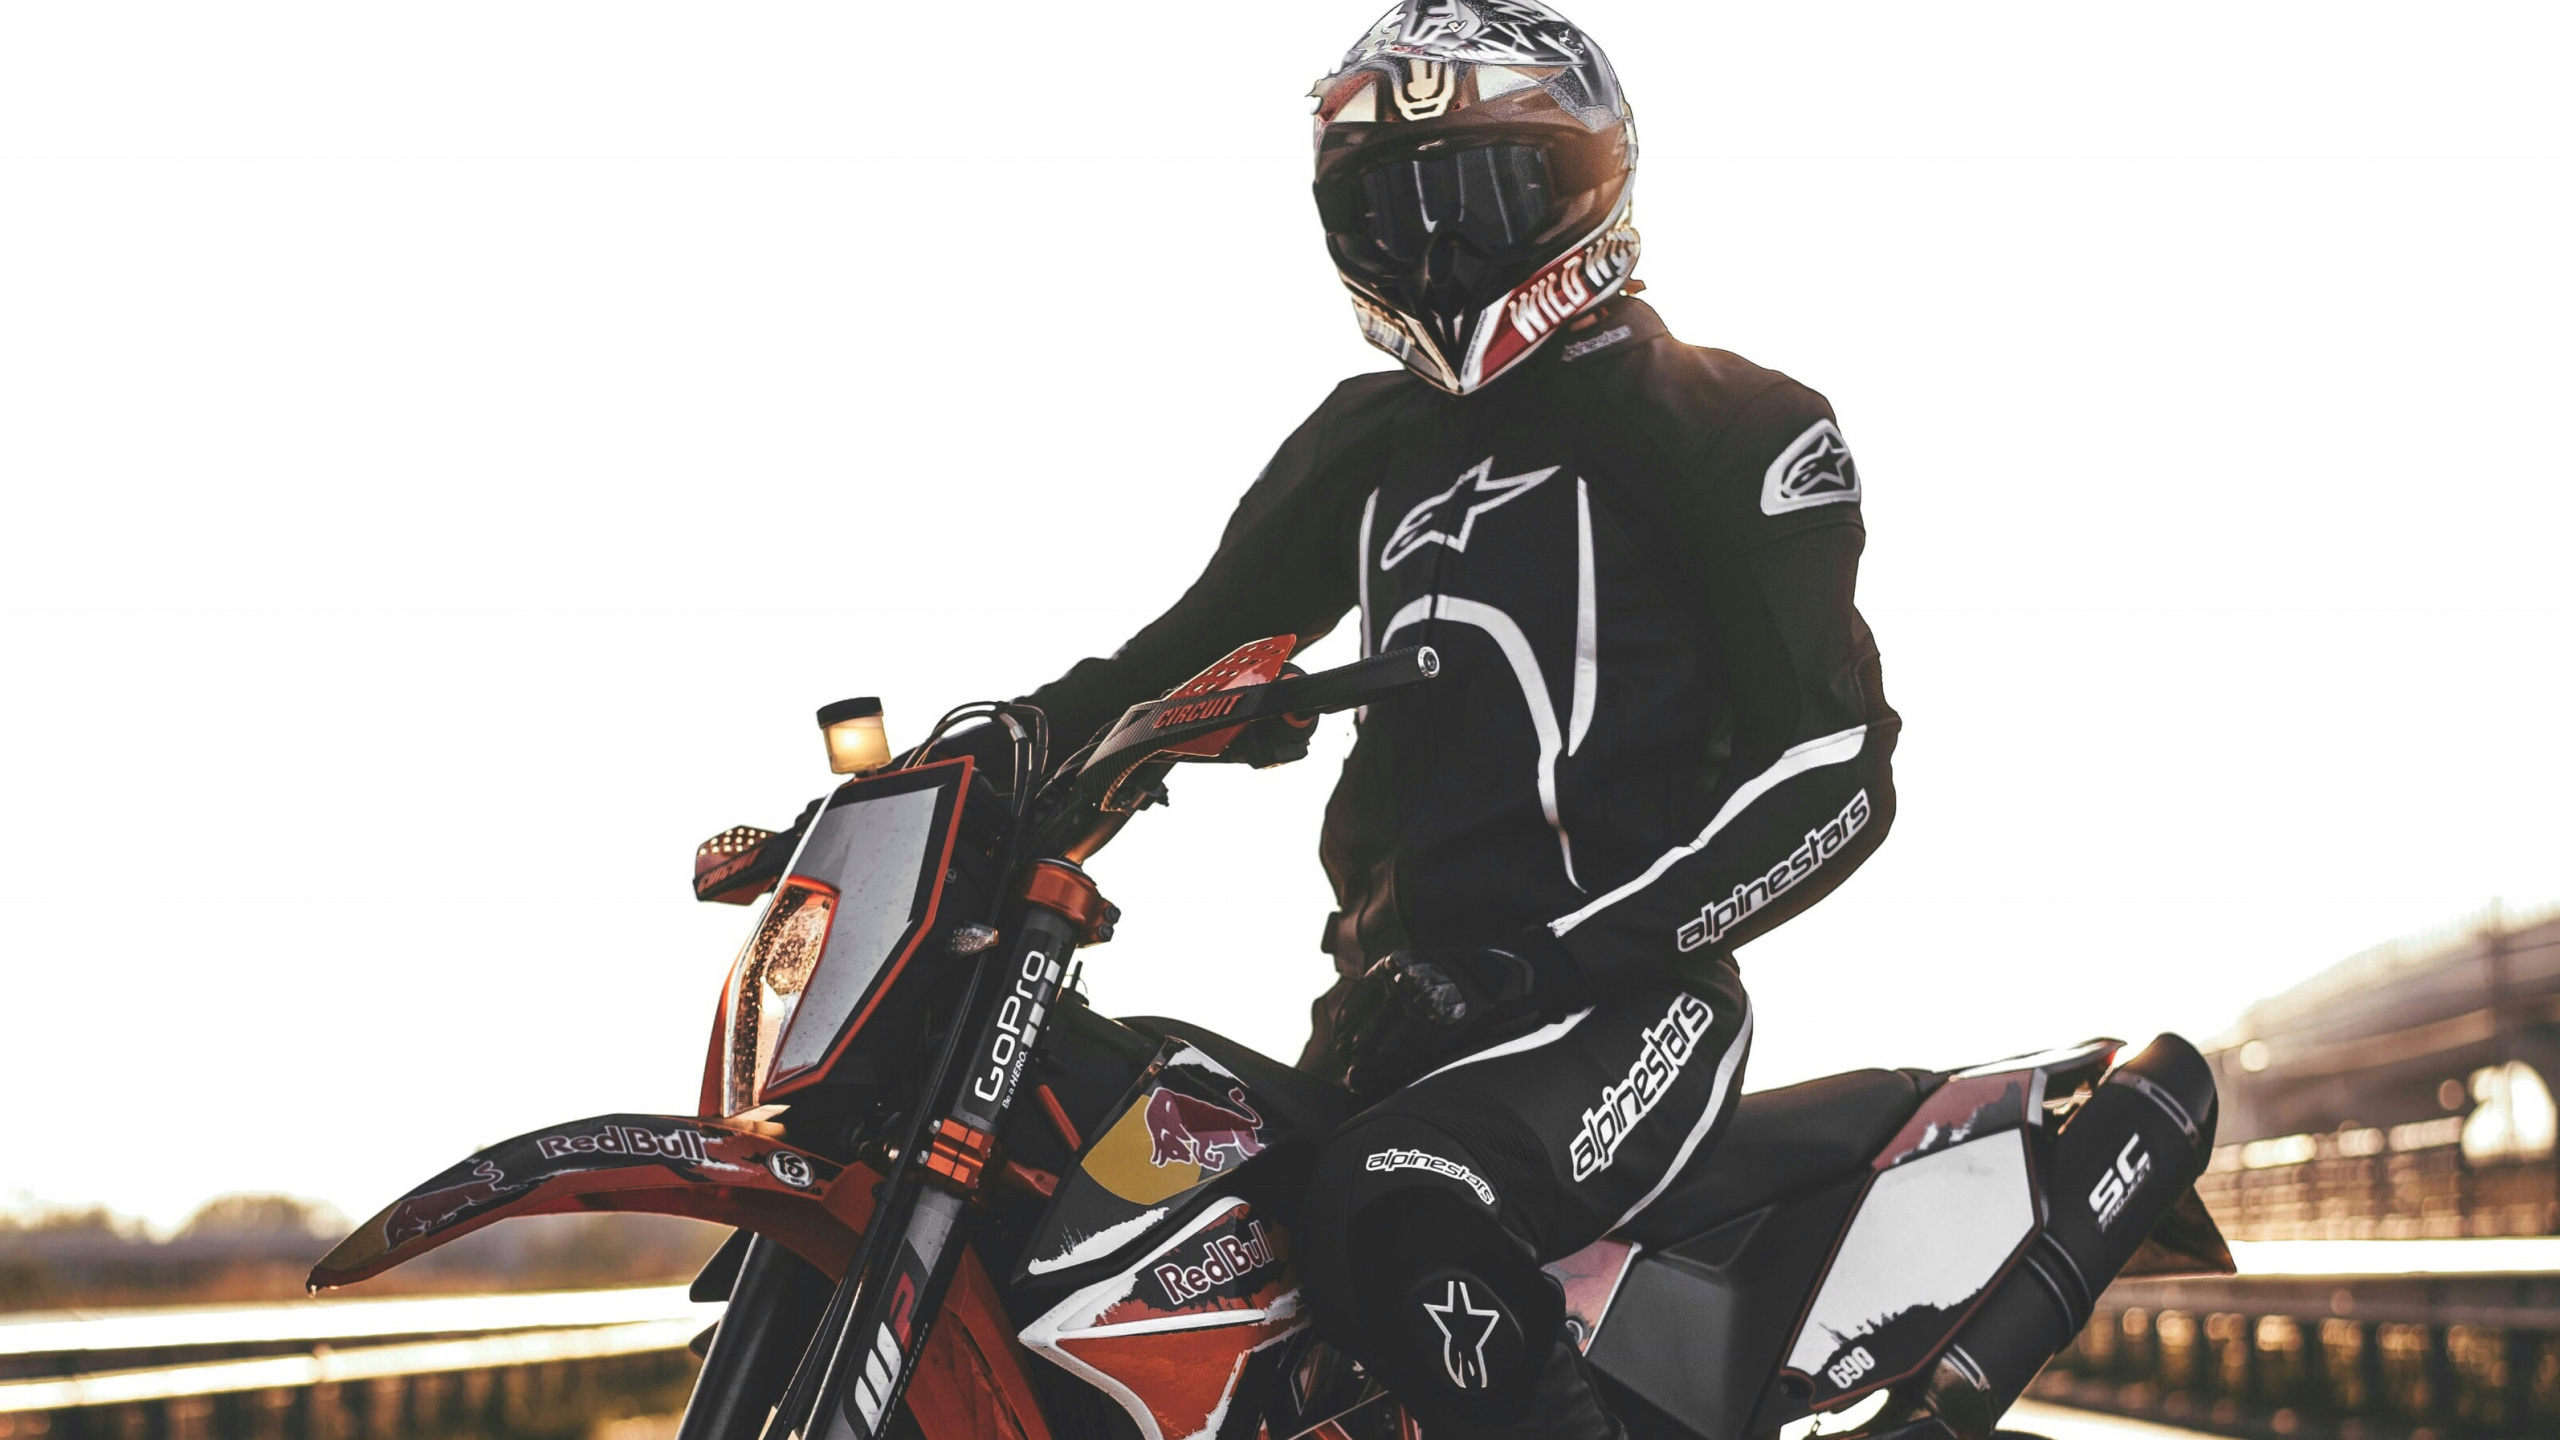 Hombre de Chaqueta Negra Montando Motocicleta. Wallpaper in 2560x1440 Resolution